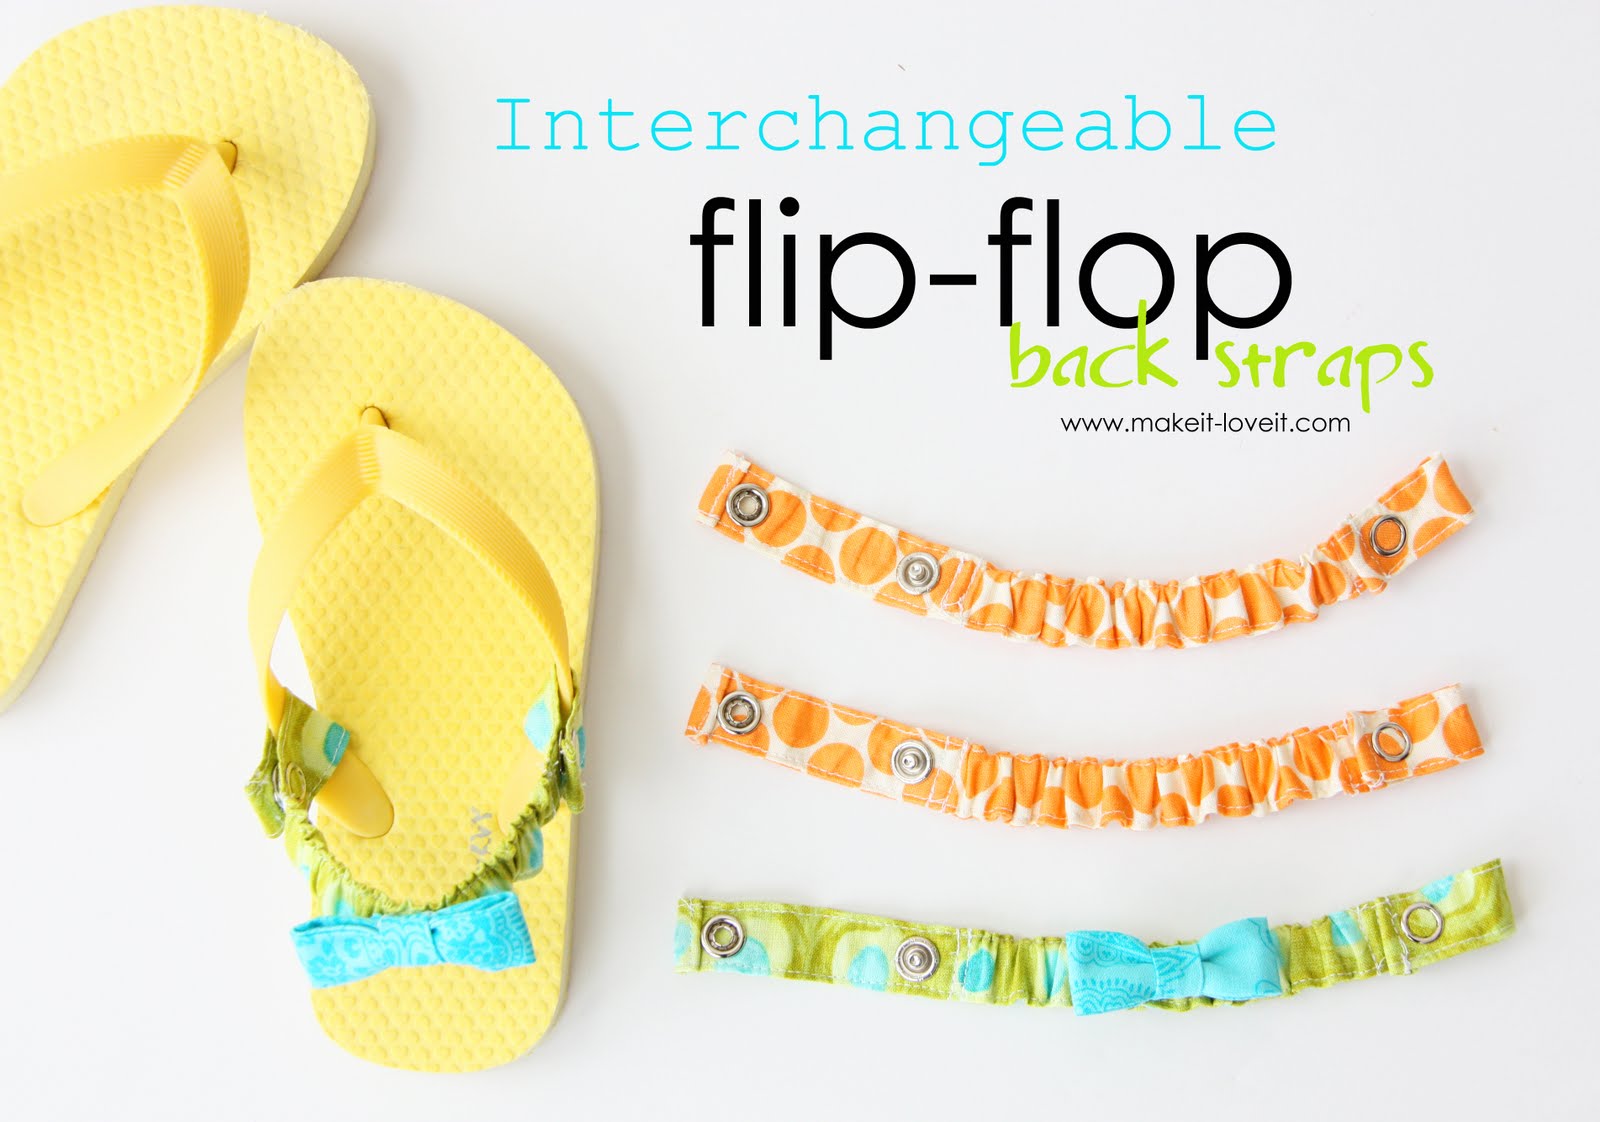 removable back straps for flip flops